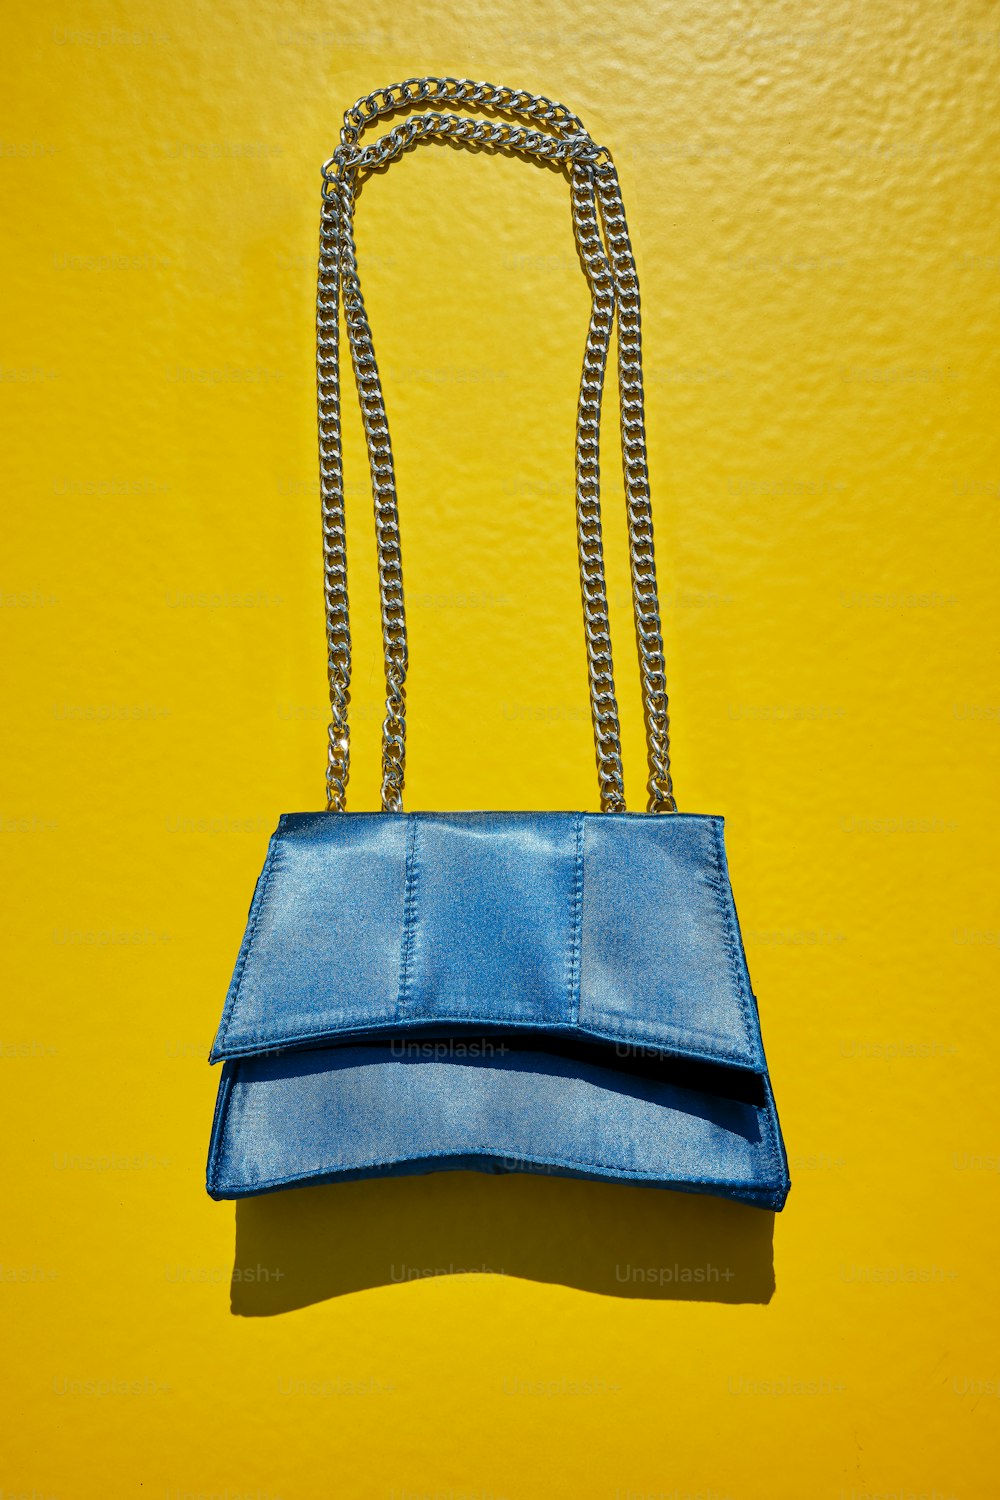 uma bolsa azul pendurada em uma parede amarela